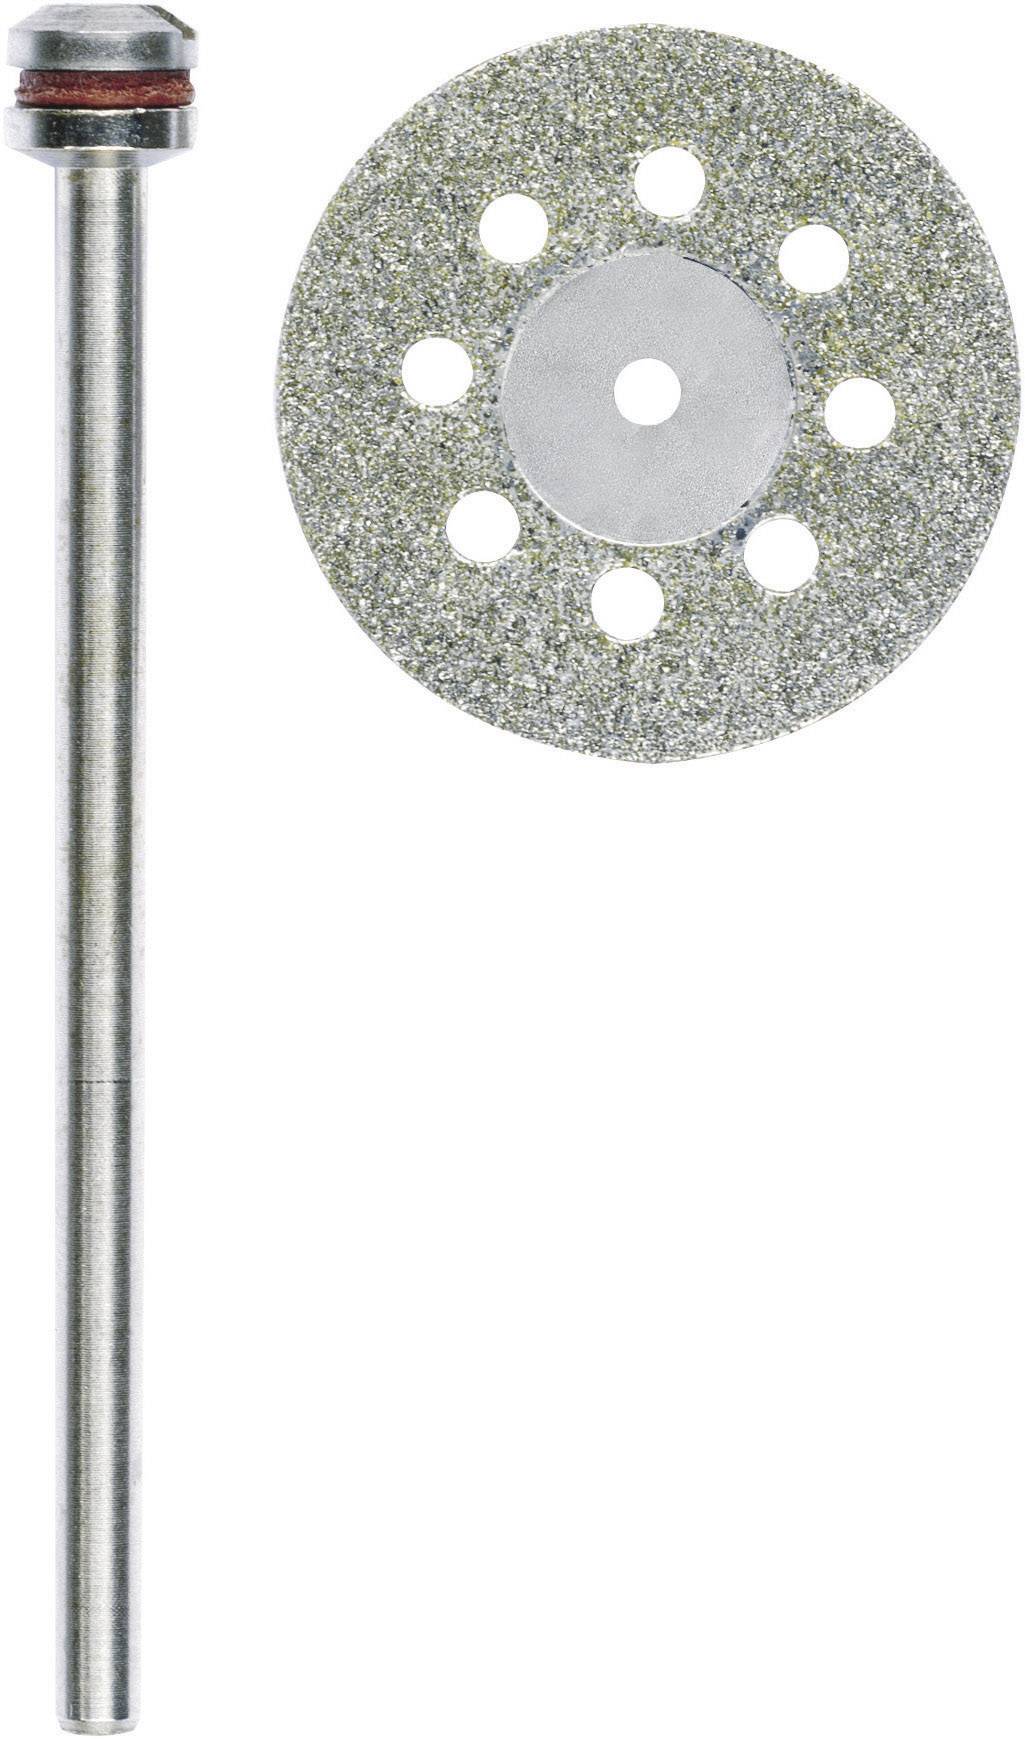 PROXXON Diamantierte Trennscheibe mit Kühllöchern Proxxon Micromot 28 844 Durchmesser 20 mm Innen-Ø